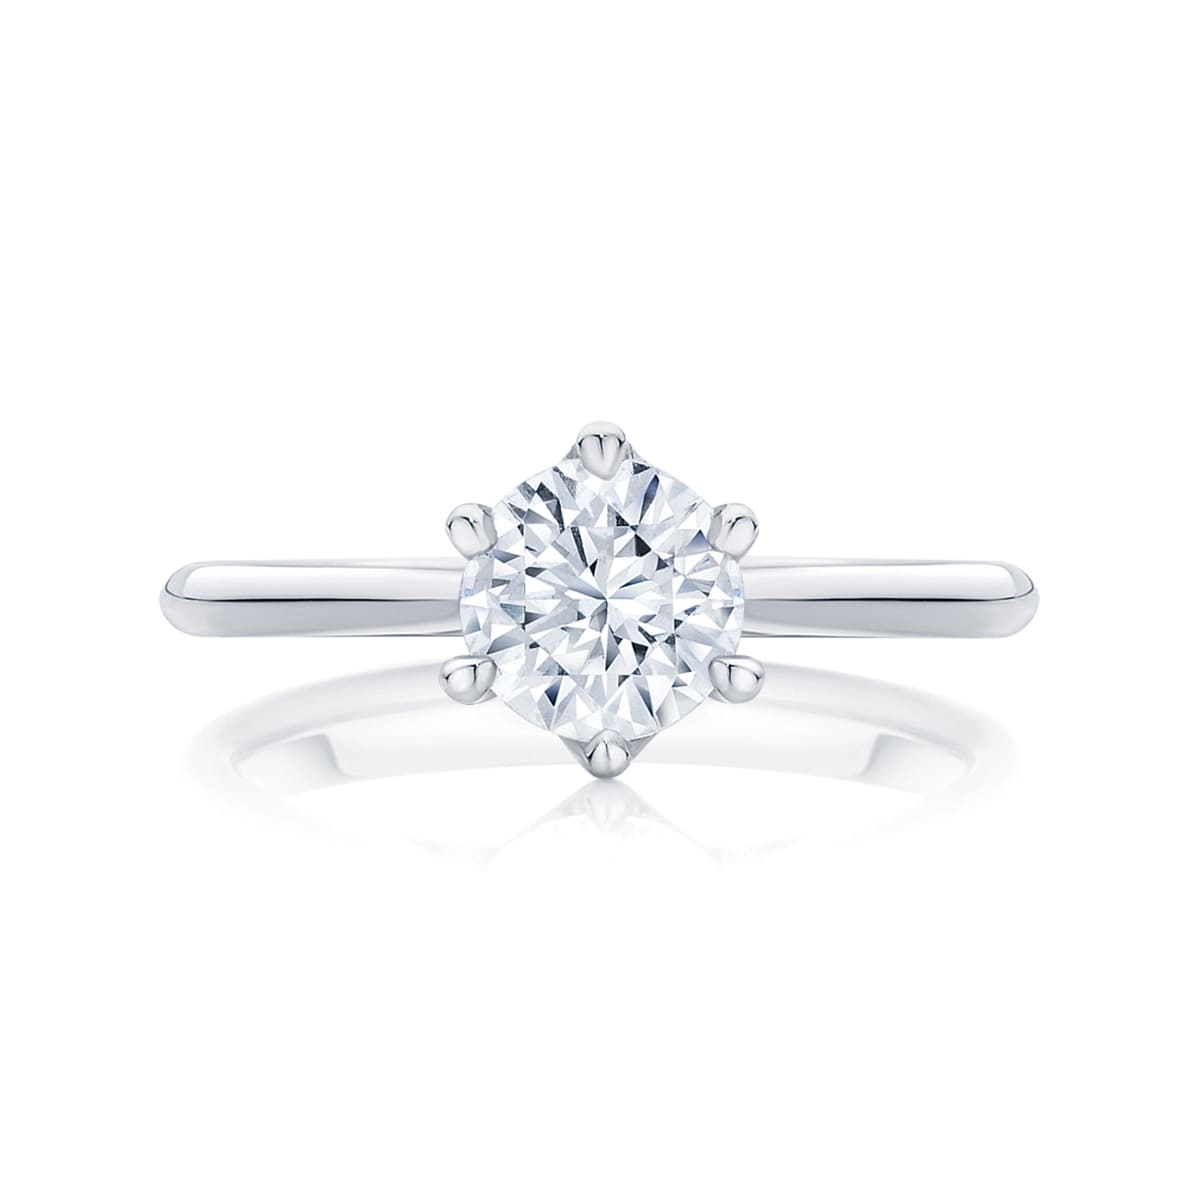 Round diamond engagement ring platinum solitaire